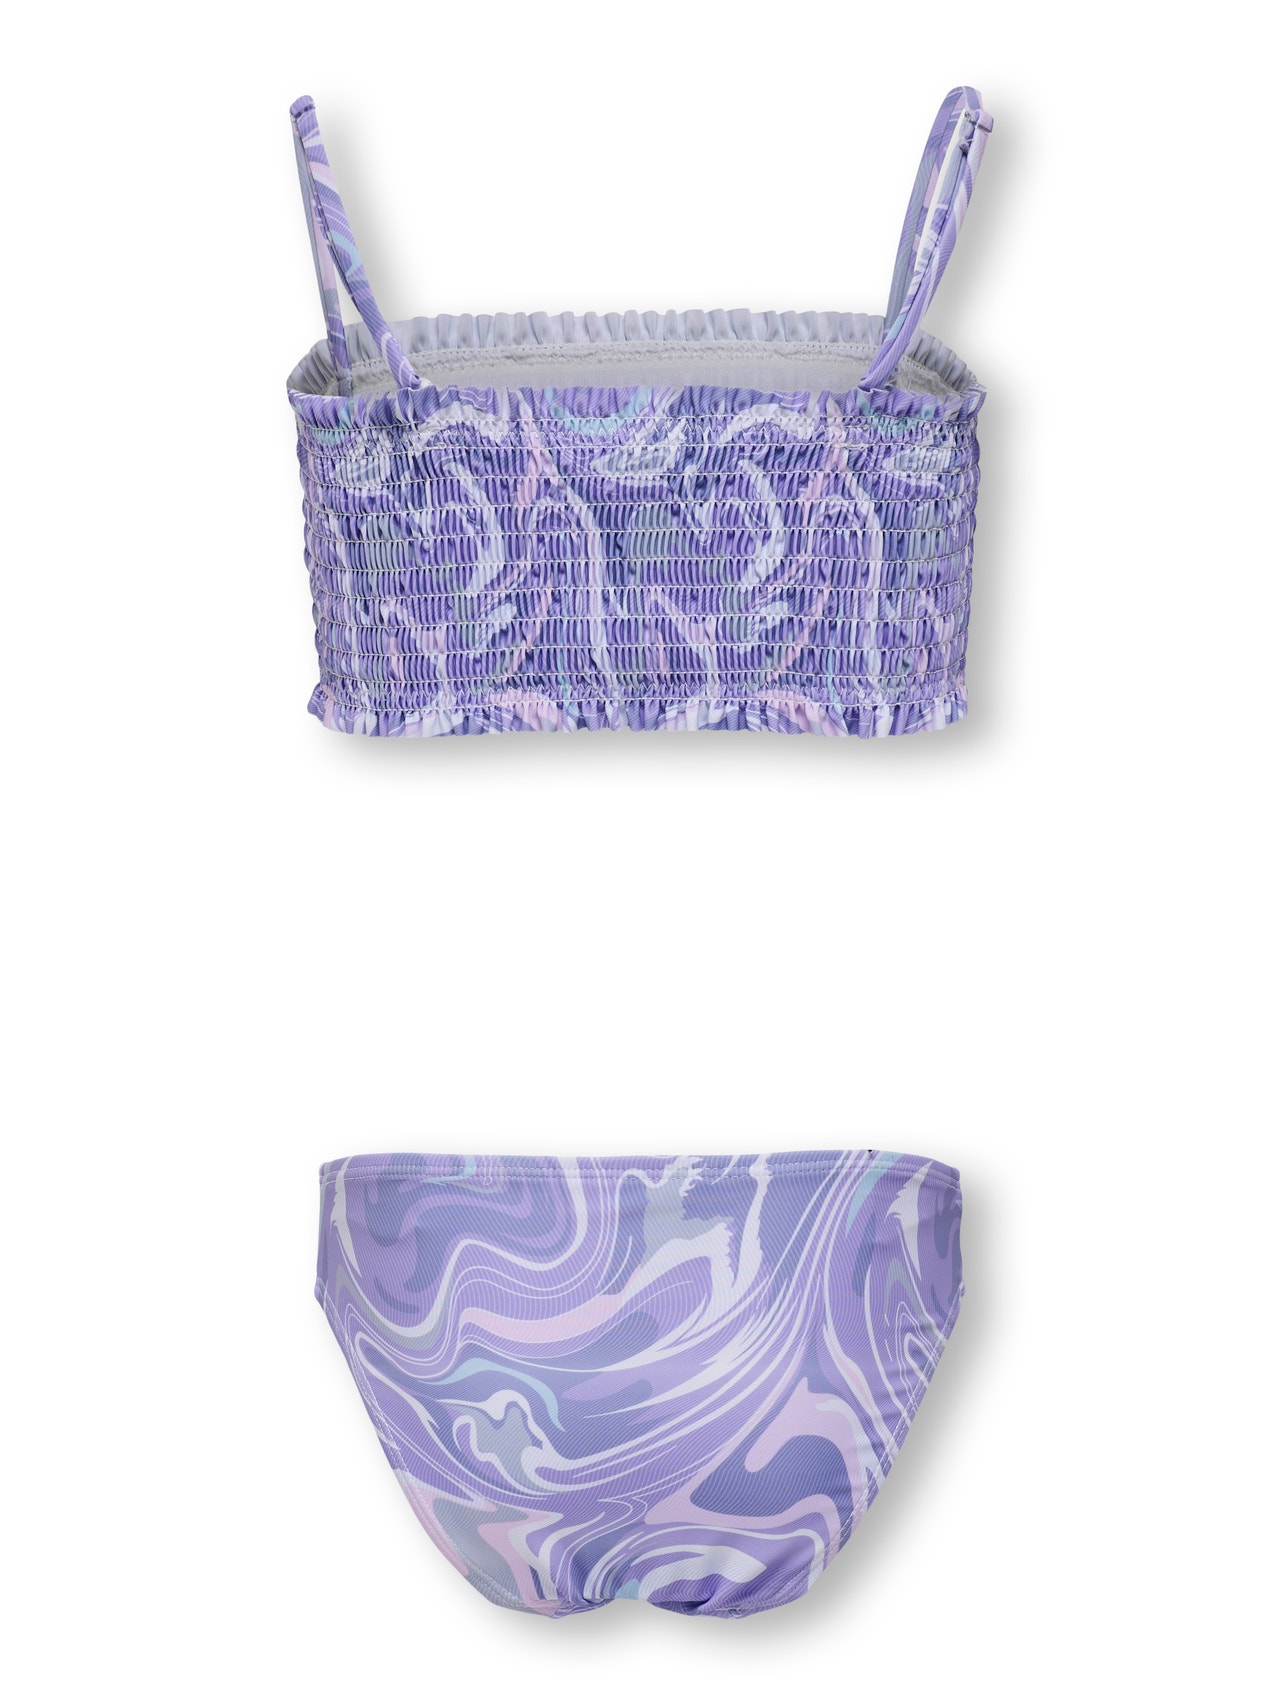 ONLY Tie-dye smock Bikini -Purple Rose - 15252734